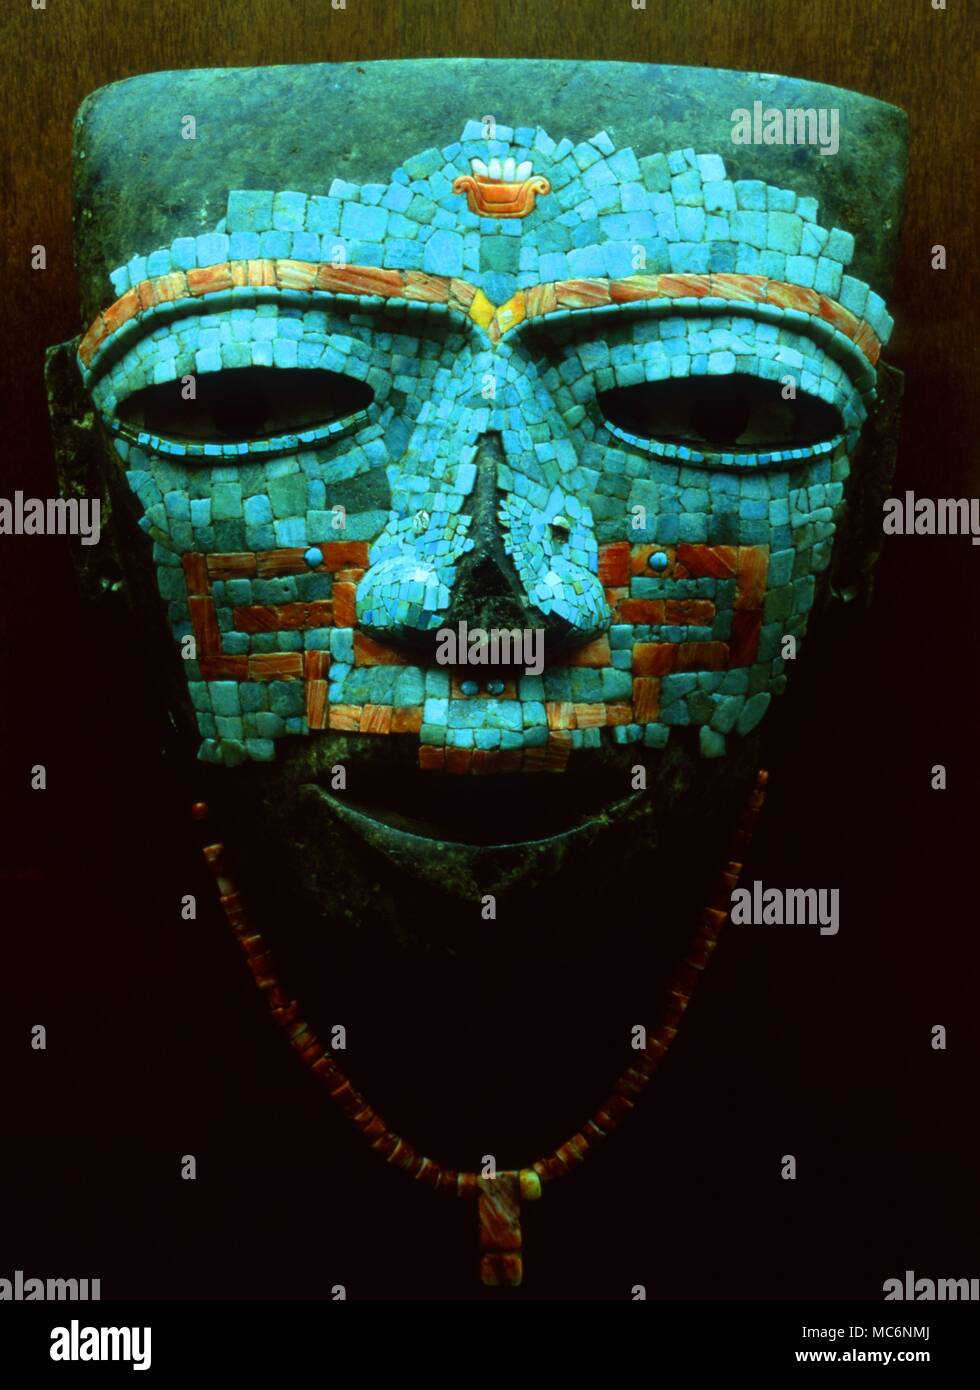 Masque, faite de tesselles de mosaïque de turquoise, corail et shell. Toltèques. Dans le Antrhopolocial Nationala Museum, Mexico. Banque D'Images